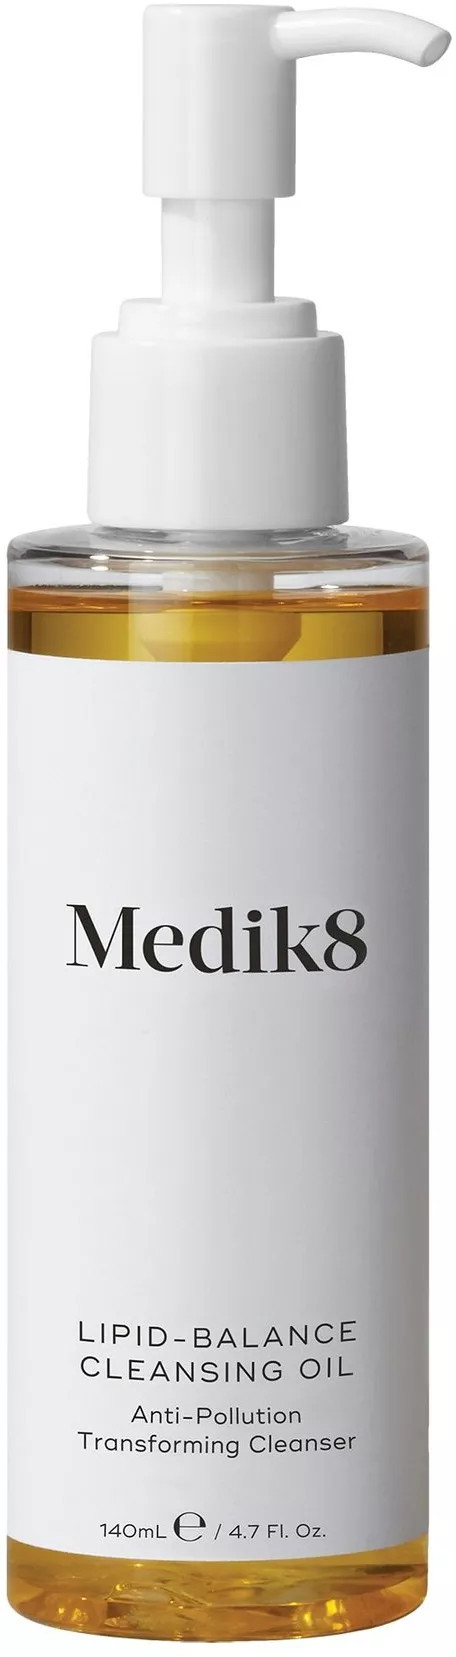 Medik8 Čisticí pleťový olej Lipid-Balance (Cleansing Oil) 140 ml